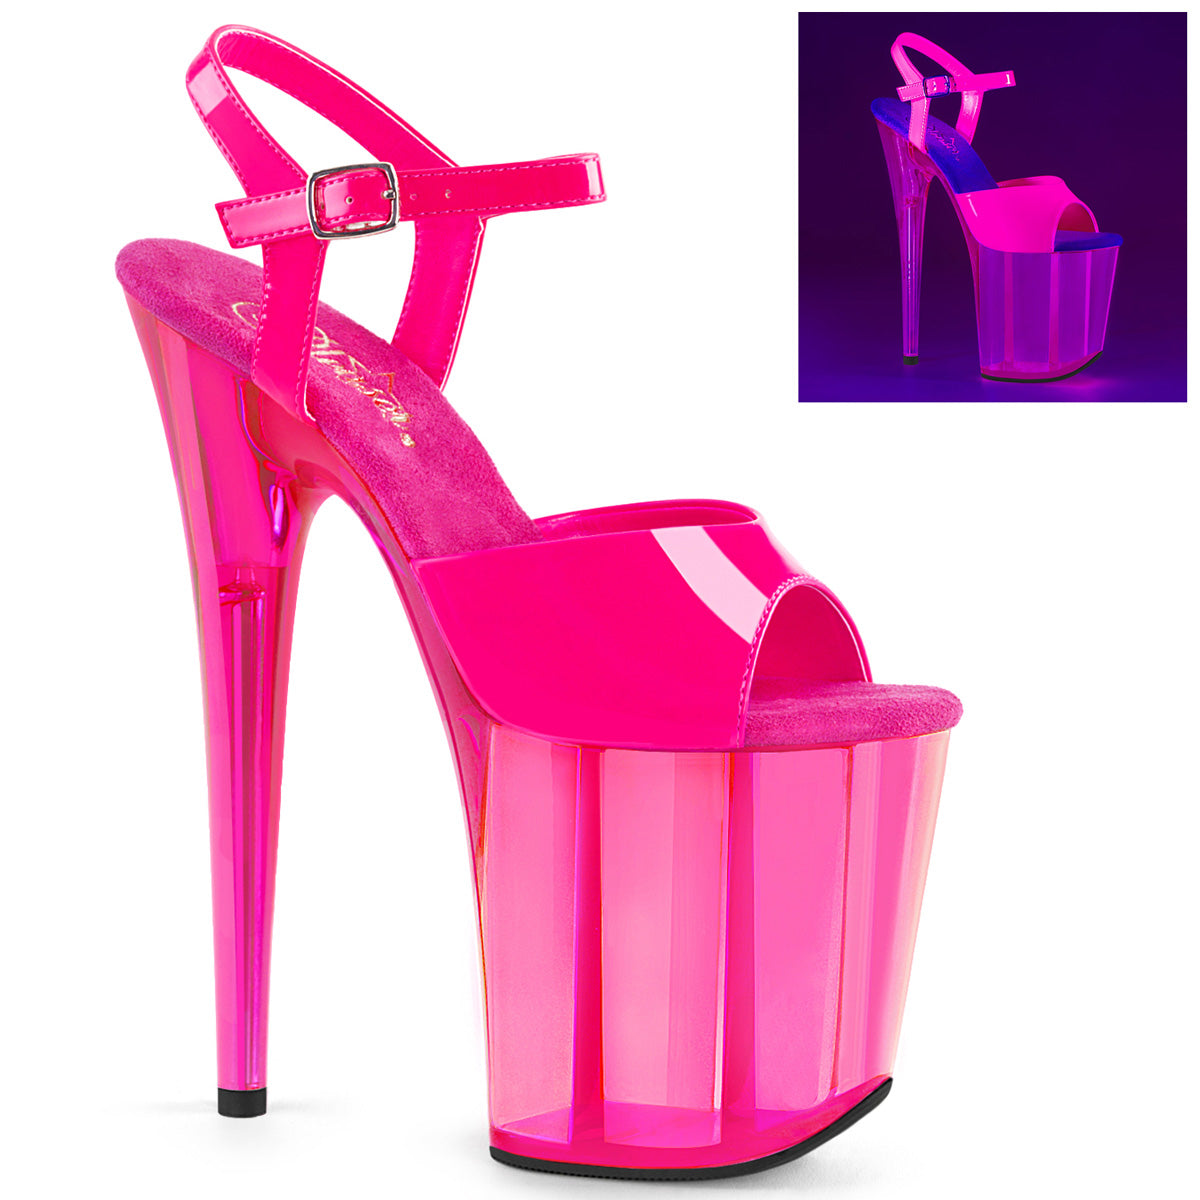 Flamingo-809UVT 8 "Heel Neon Hot Pink Pole Dancing Platforms